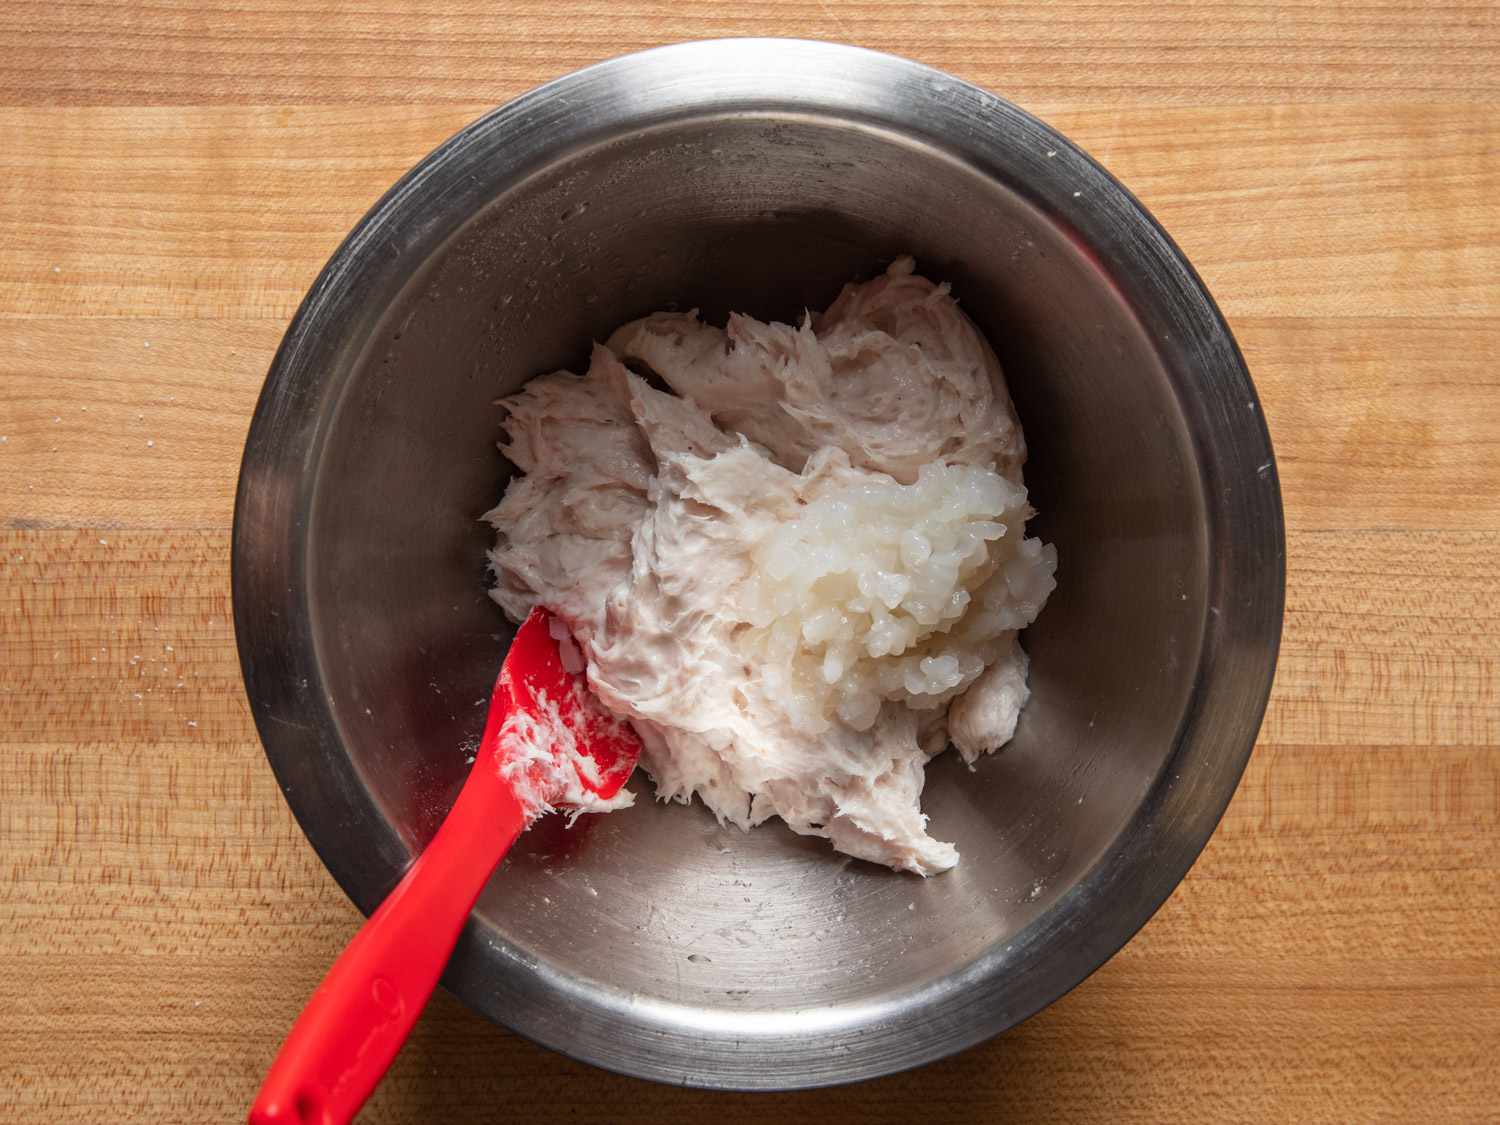 用红色抹刀将加工过的鱿鱼混合物和剁碎的鱿鱼放在碗里的俯视图